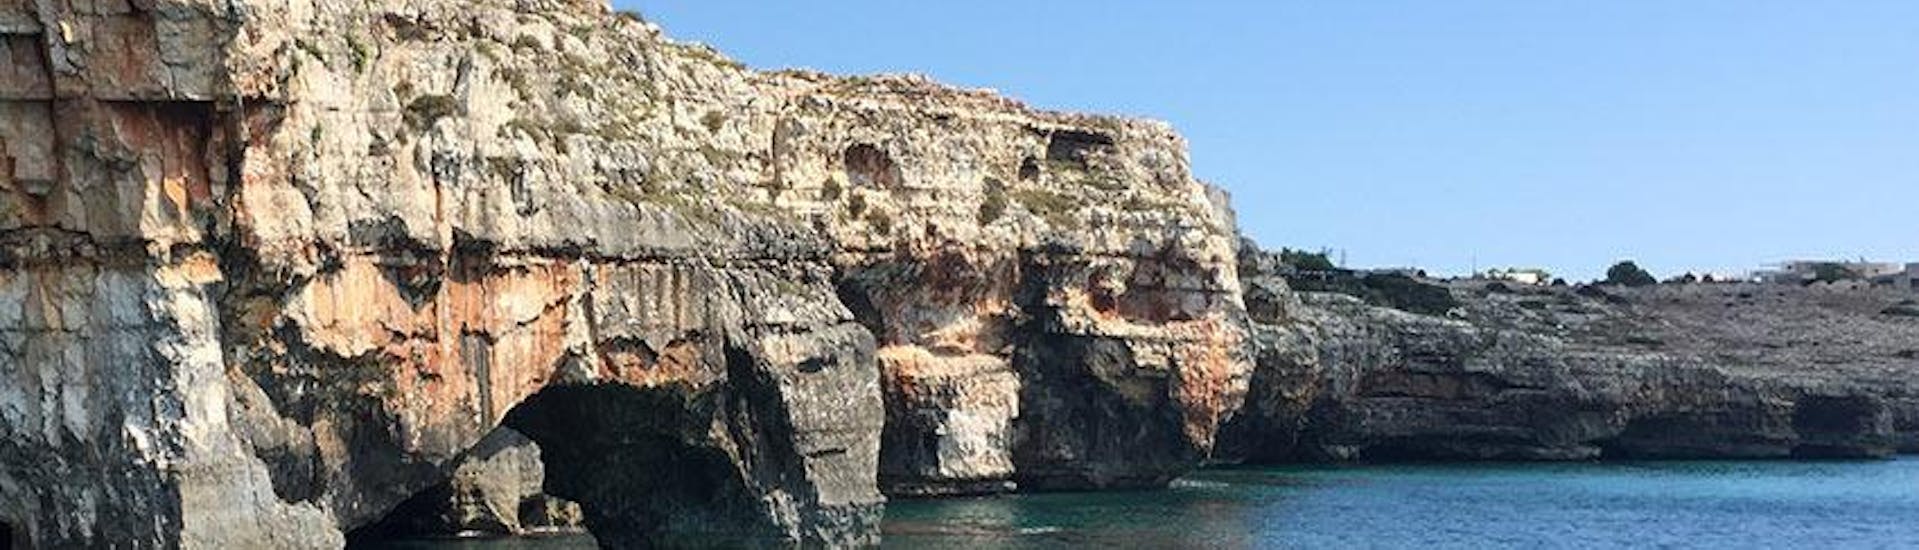 Una delle varie grotte che potrete ammirare durante i giri in barca con Noleggio Nettuno Torre Vado.